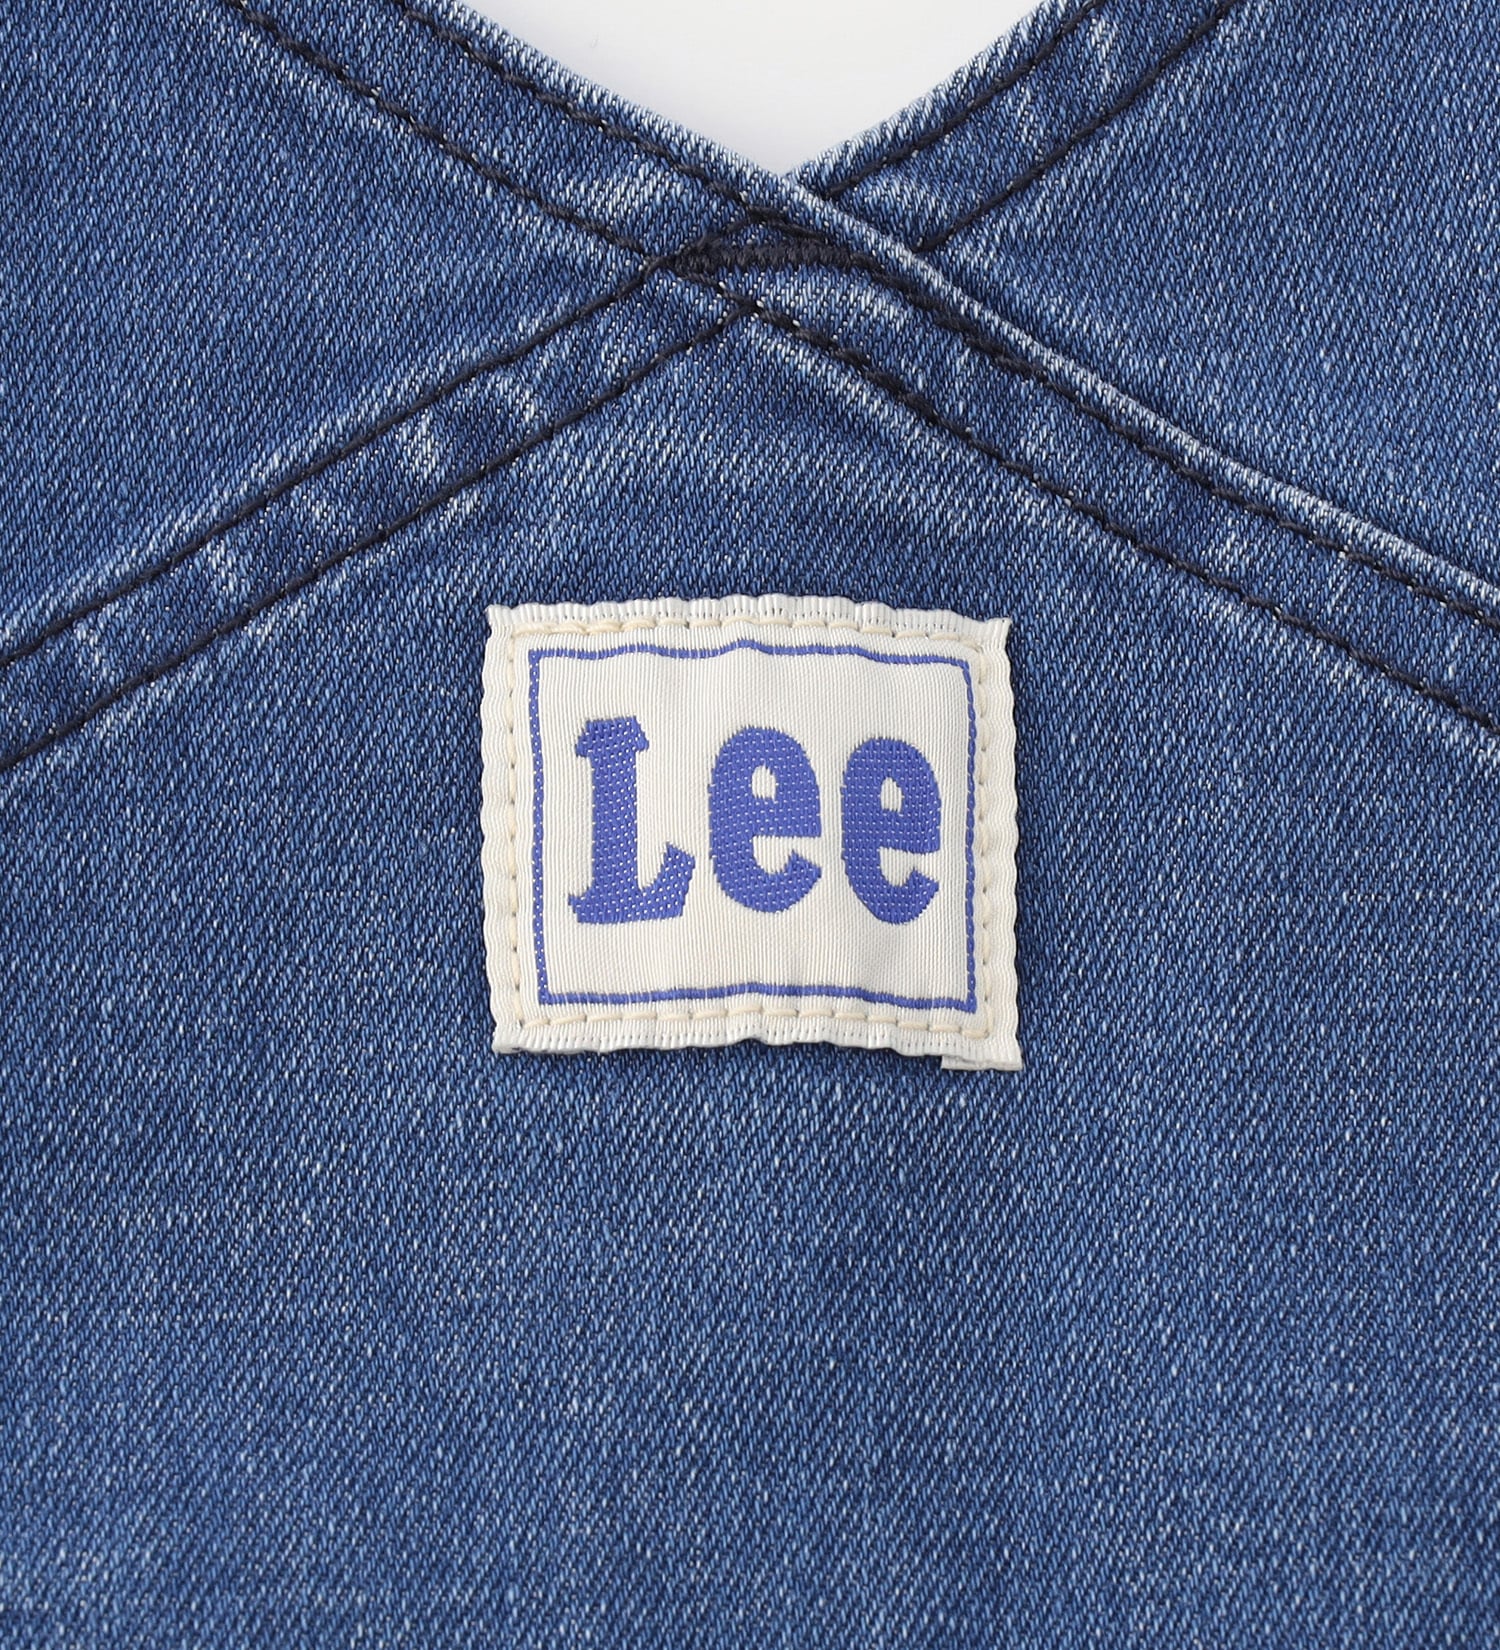 Lee(リー)の【100cm】ベビー ストレッチ オーバーオールショーツ|オールインワン/サロペット/オーバーオール/キッズ|中色ブルー